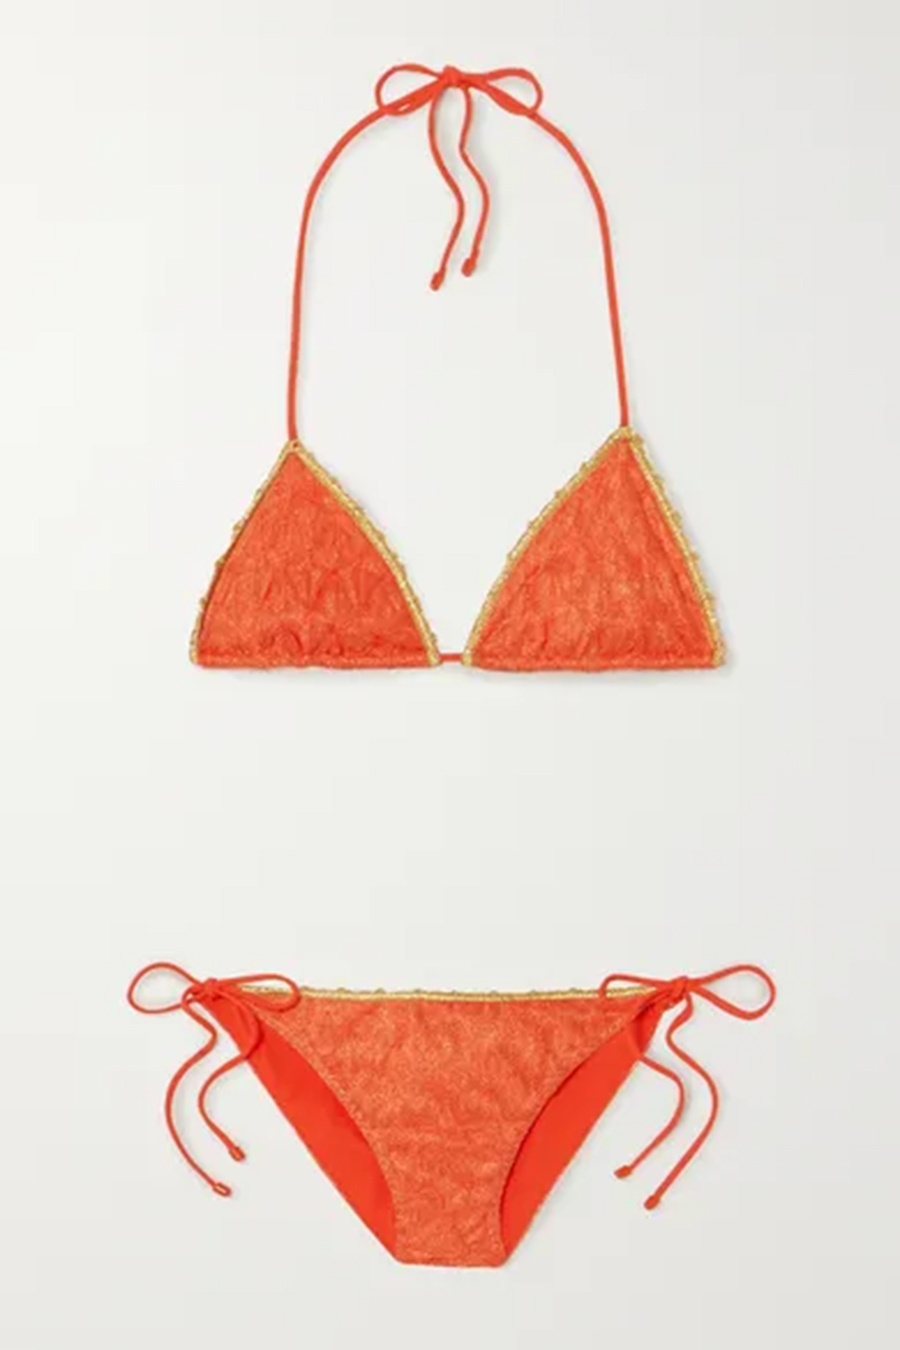 раздельный купальник бикини оранжевый с треугольными плавками на завязках модные купальники лето 2020 